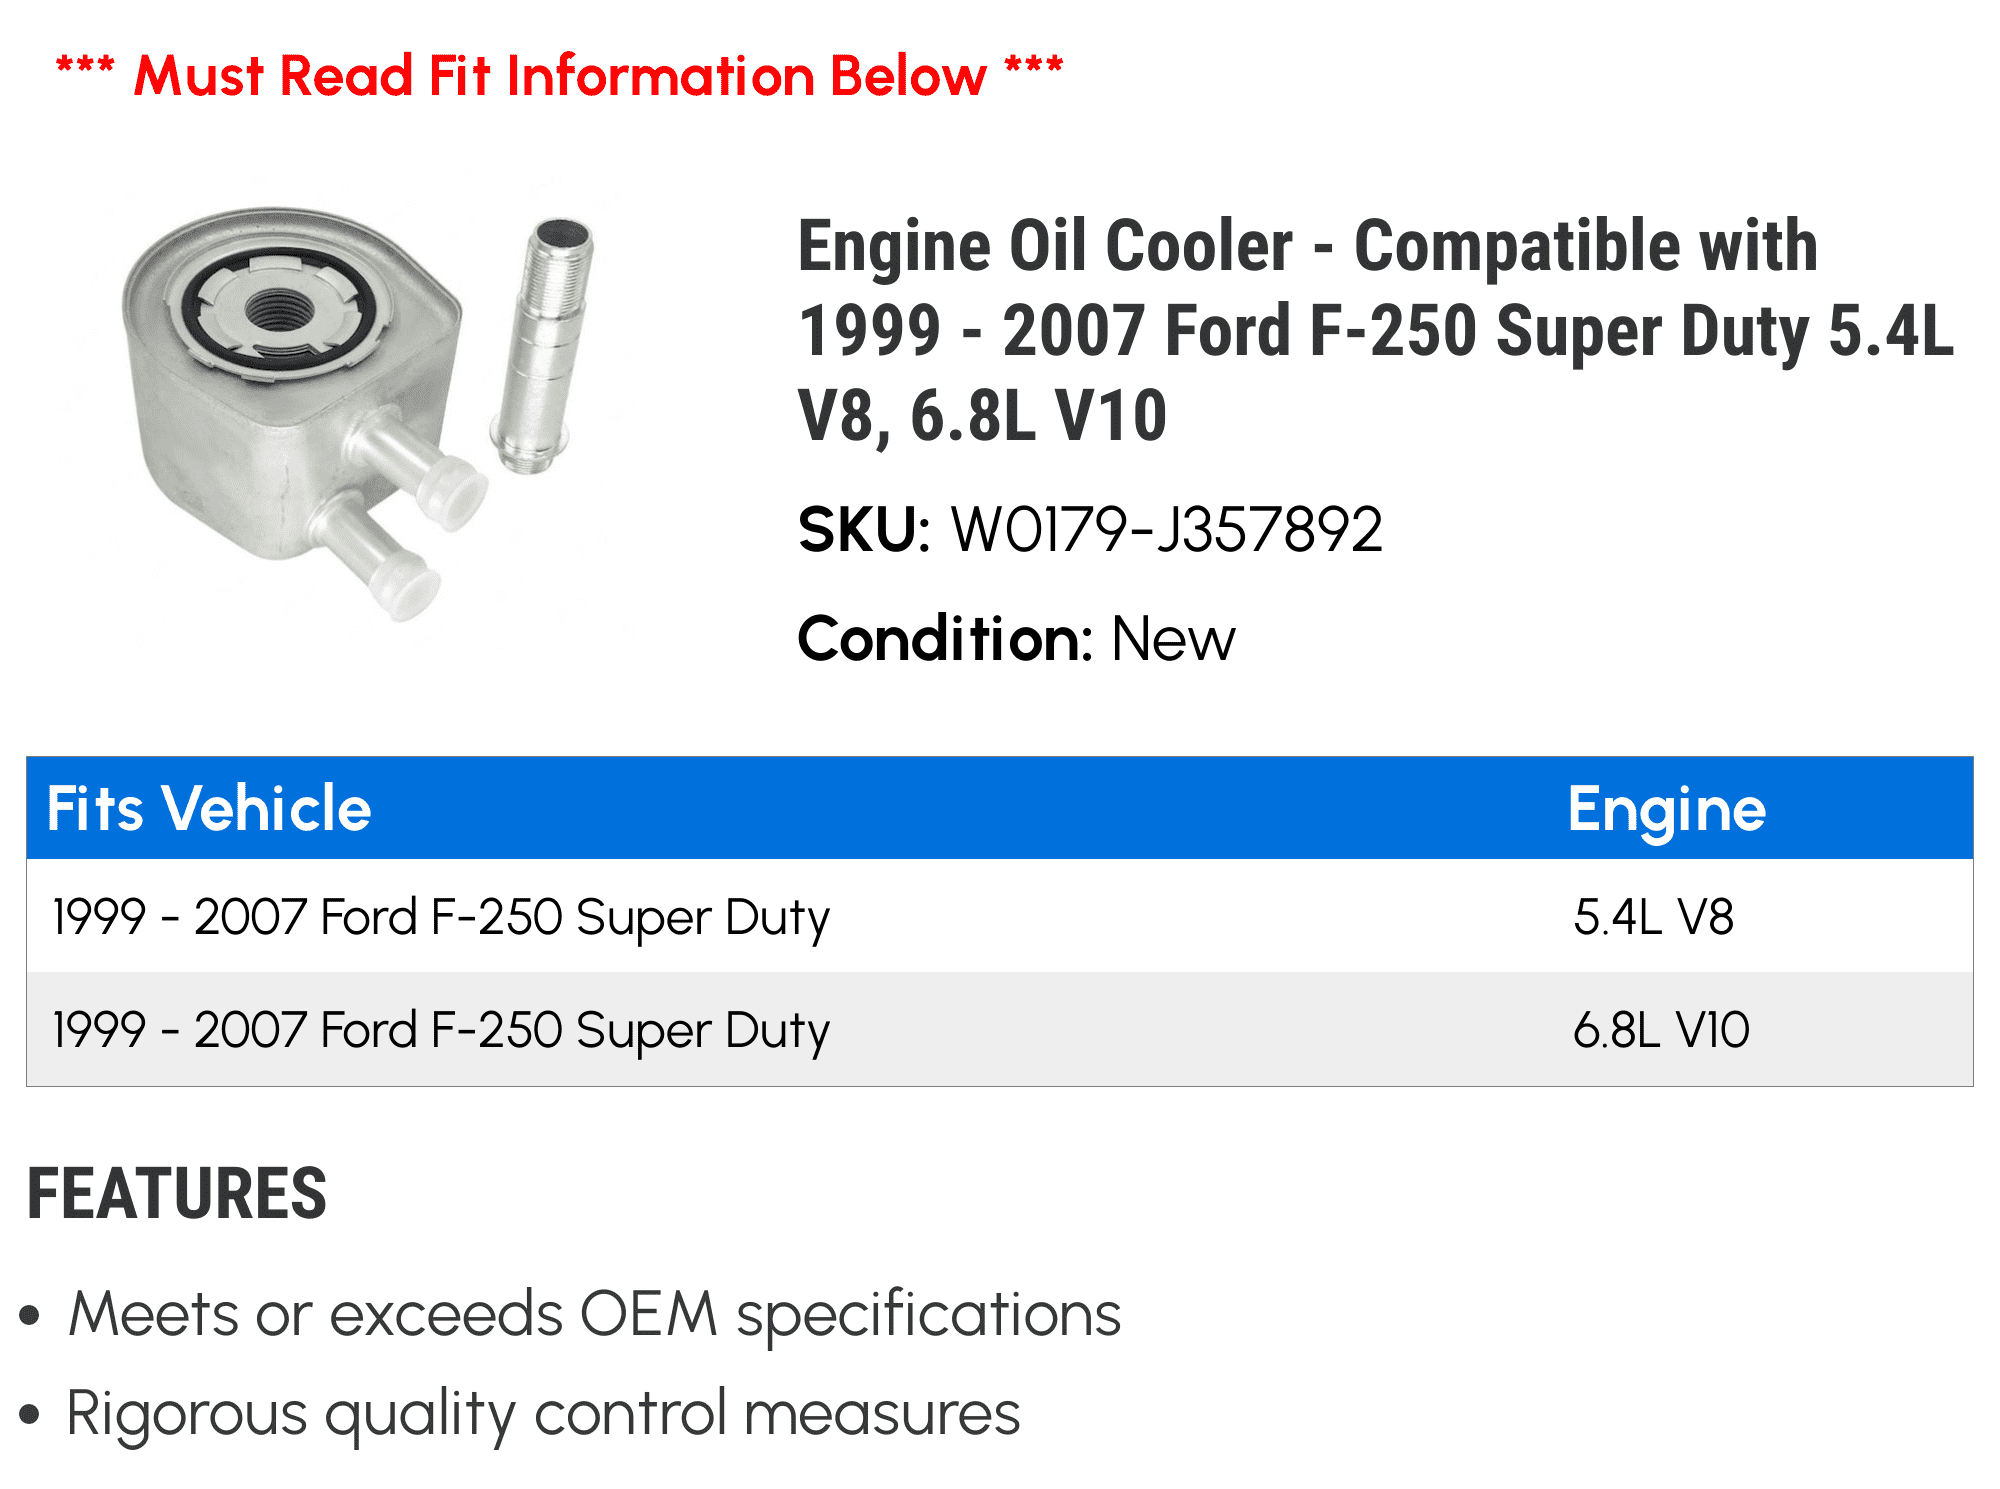 Engine Oil Cooler 6.8L V10 Compatible with 1999-2007 Ford F-250 Super Duty 5.4L V8 